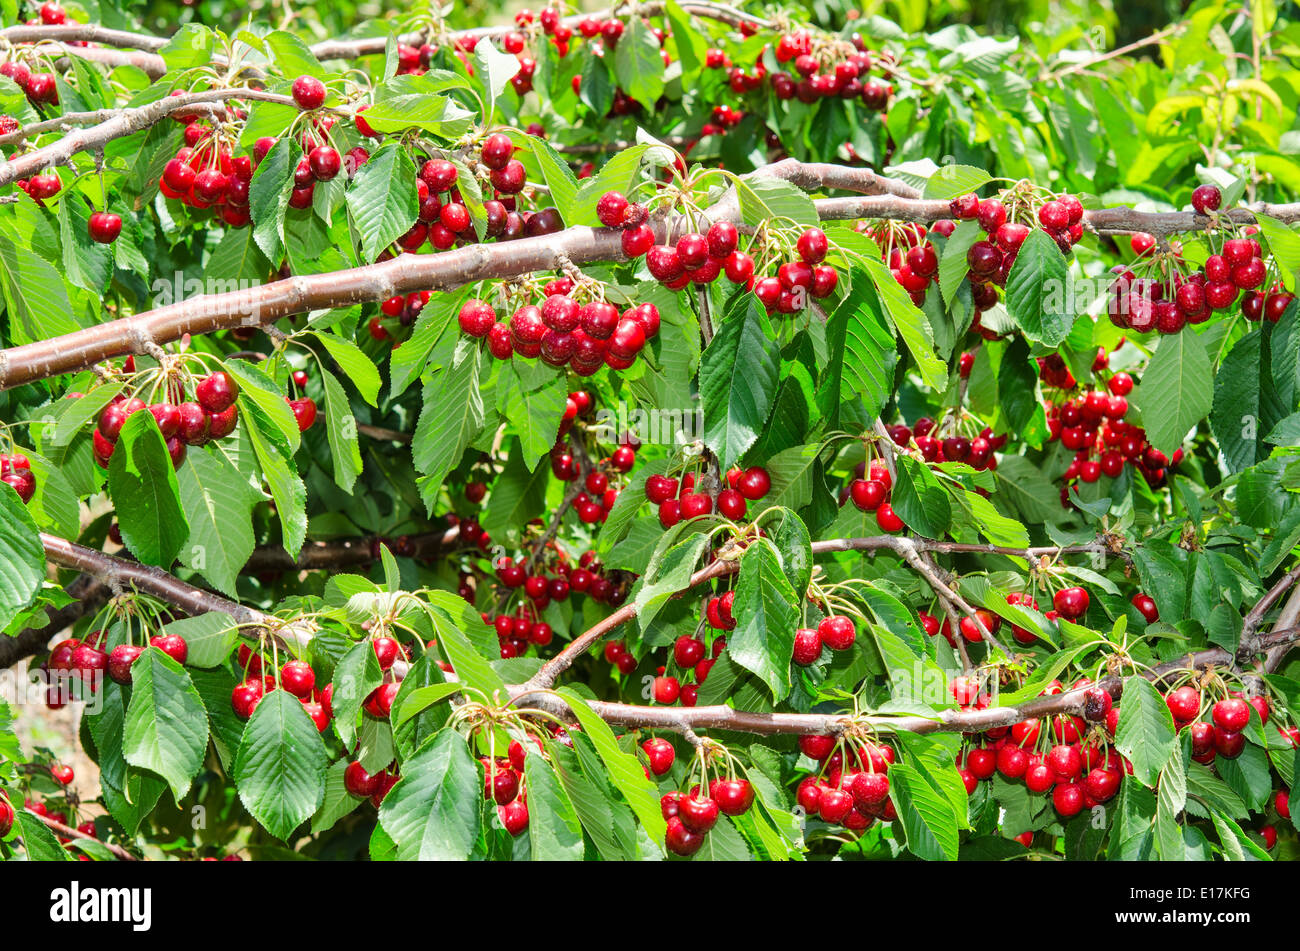 Organici naturali cherry berry grappoli nel fogliame degli alberi Foto Stock